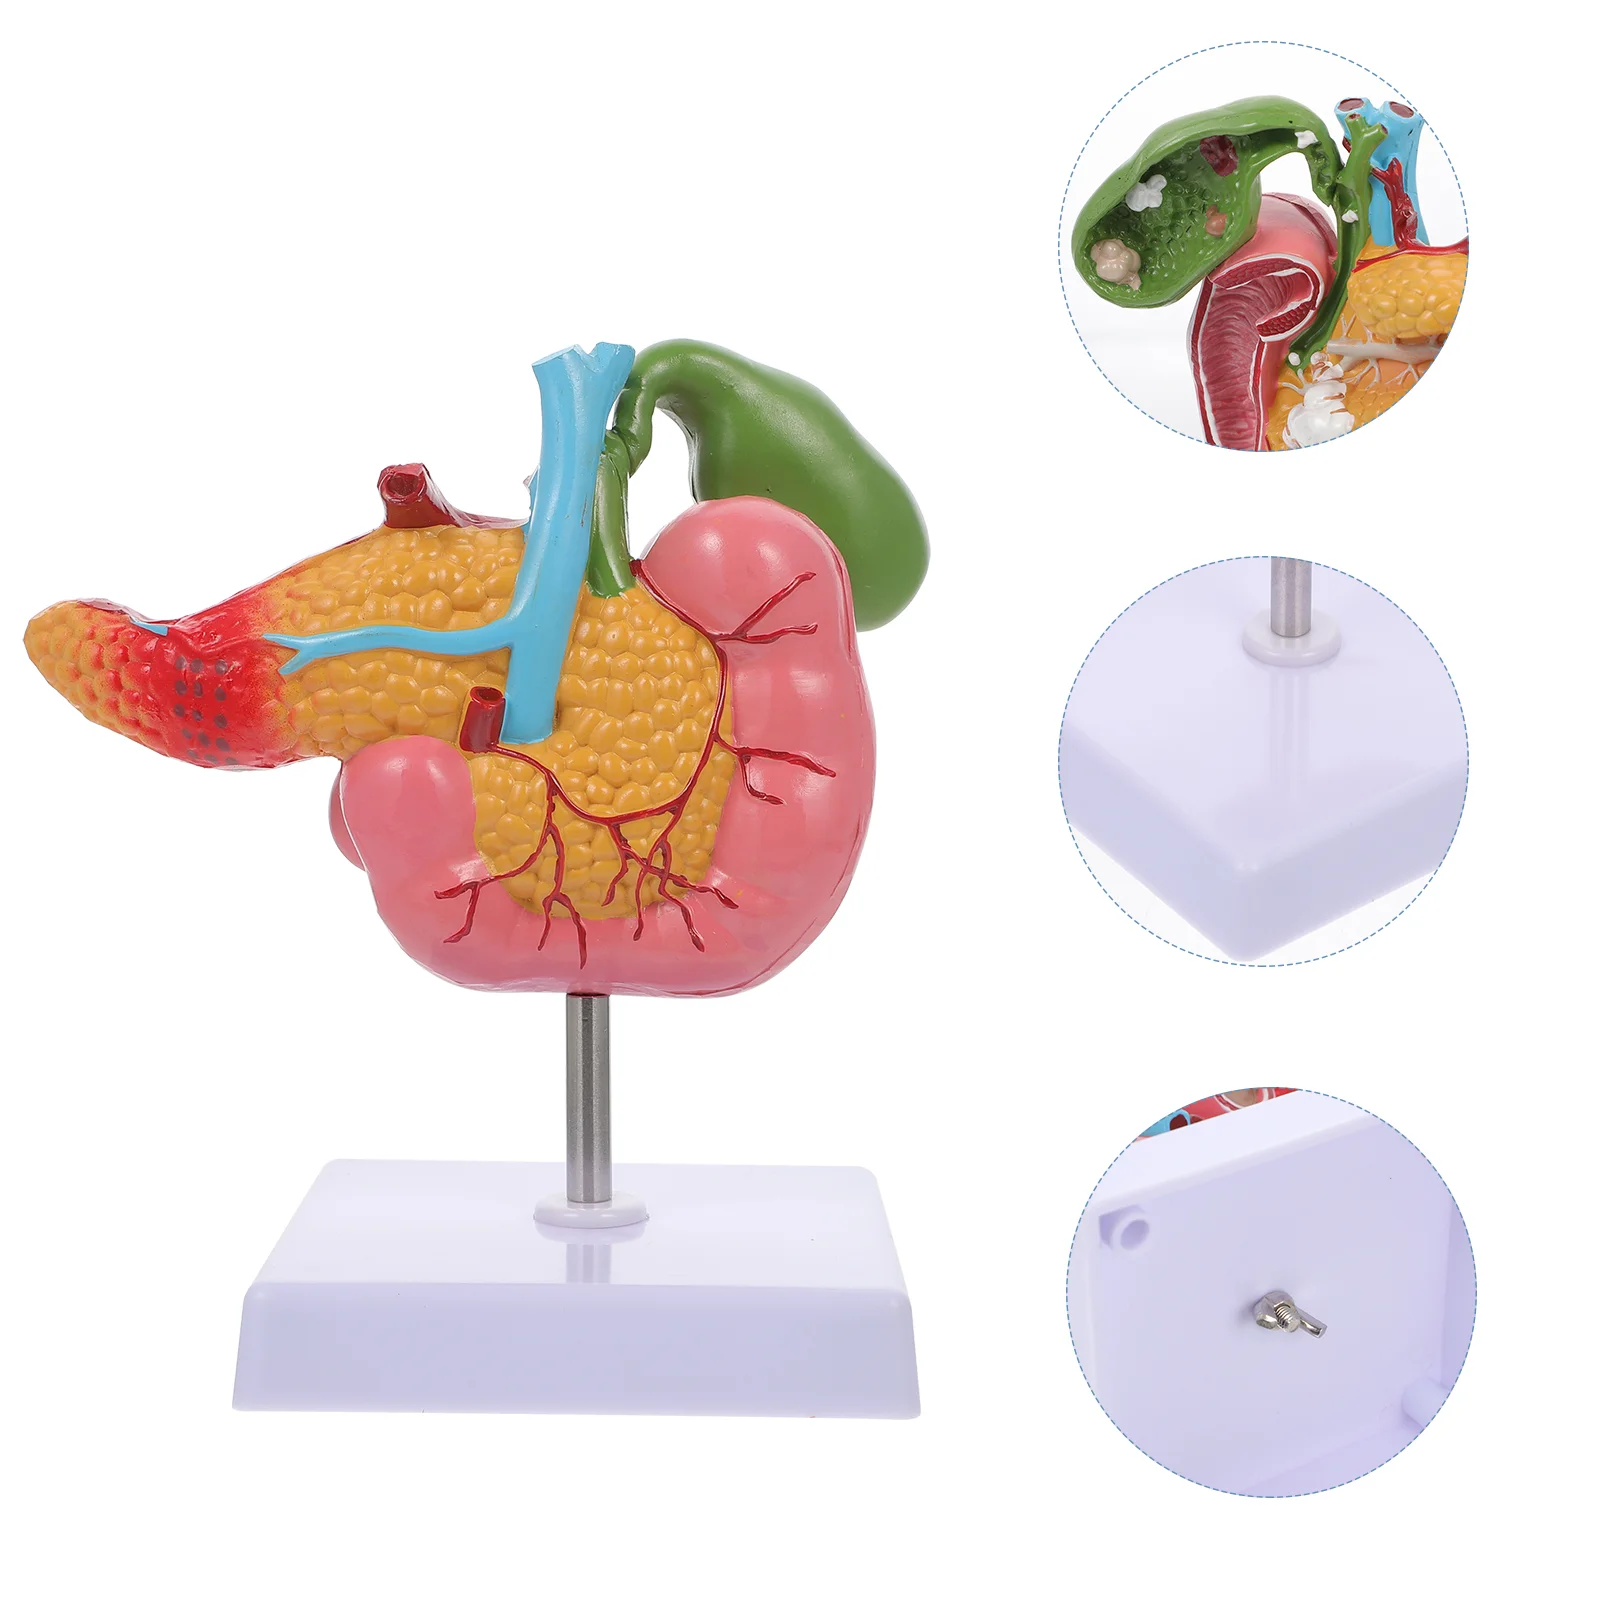 

Патологическая модель желчного пузыря, поджелудочной железы, поджелудочной железы, дуоденовой Lesion, биологический обучающий инструмент, материал швов